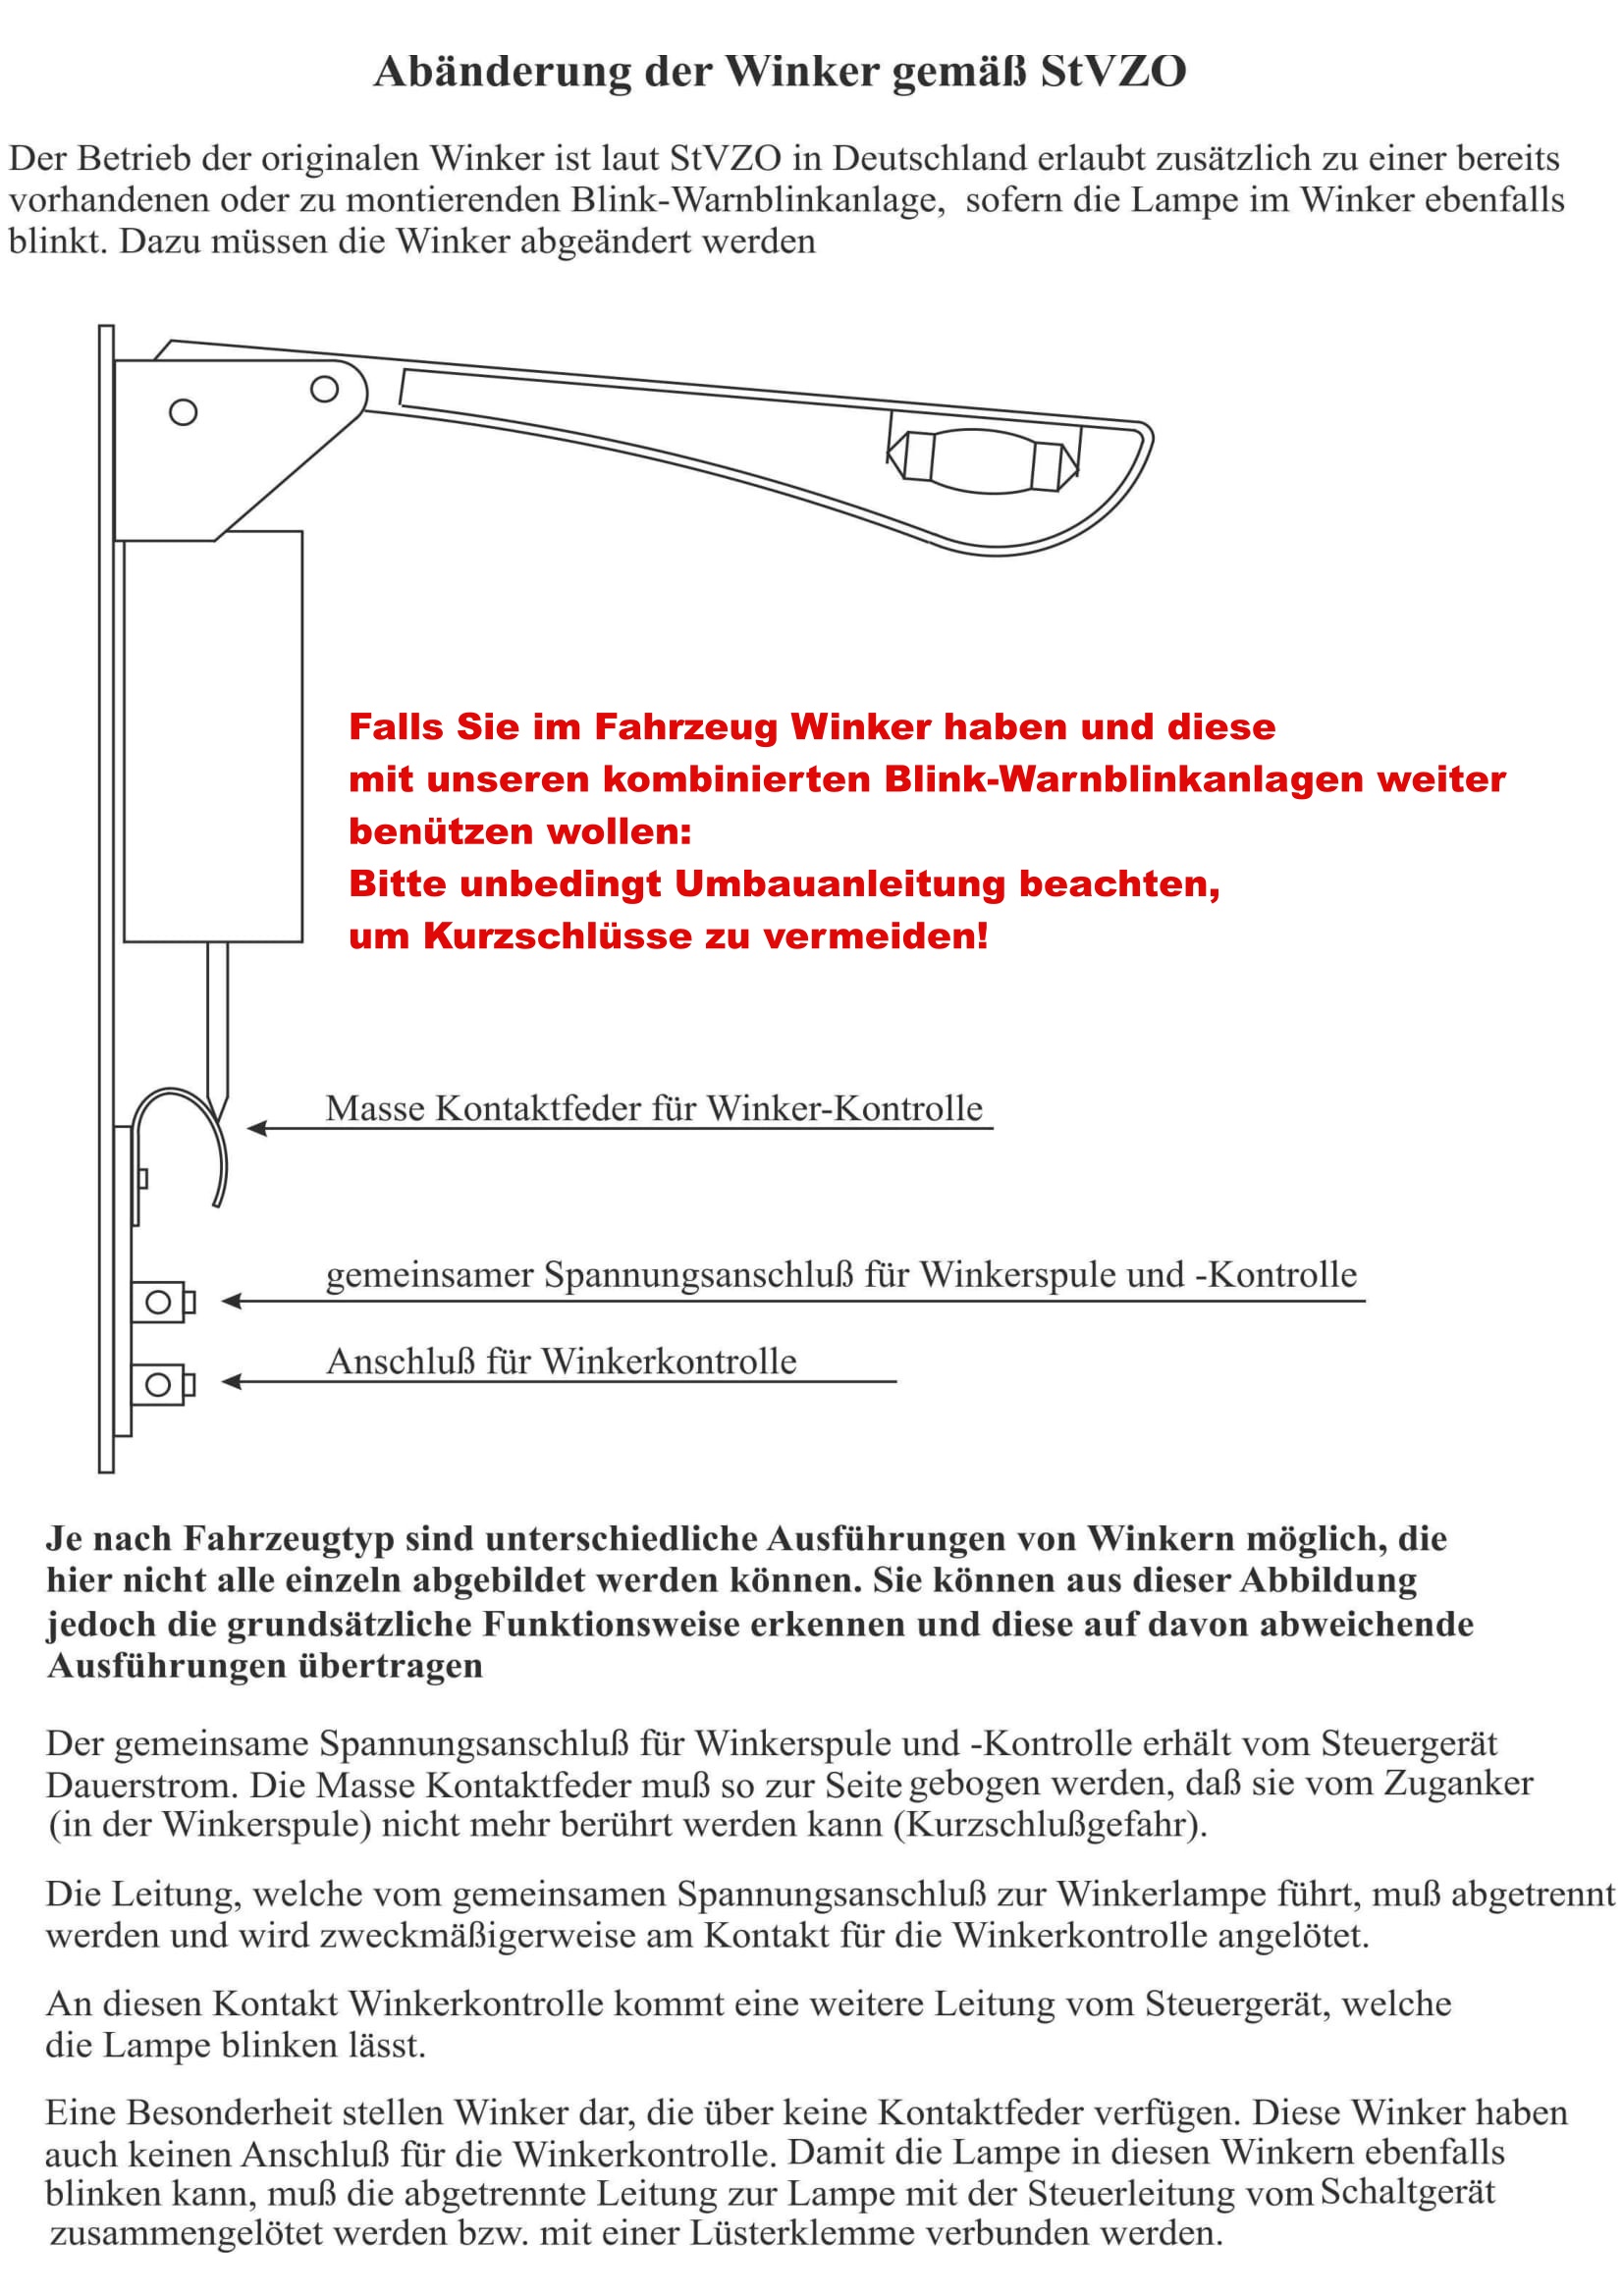 KM Blink-Warnblinkgeber 6 Volt Einkreis, Kombinierte Blink-Warnblinkanlage, Blink-Warnblinkgeber, Relais und Schalter